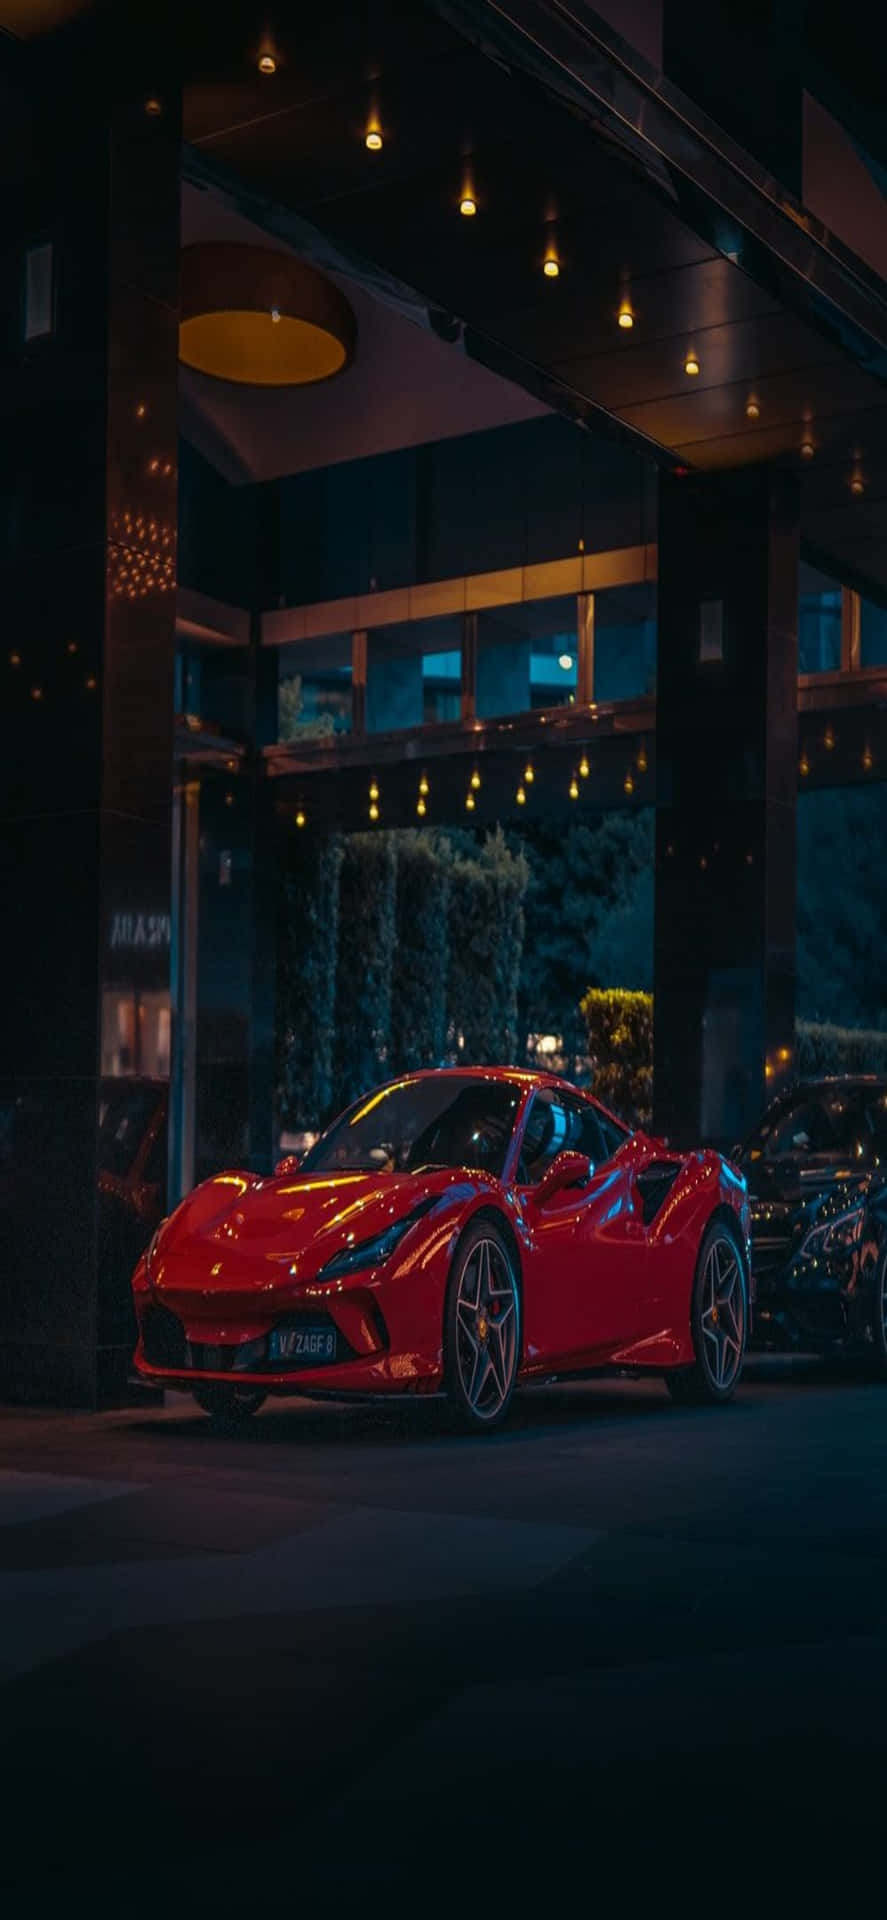 Iphonexs Max Ferrari Hintergrund, Roter Ferrari 458 Speciale In Der Nacht